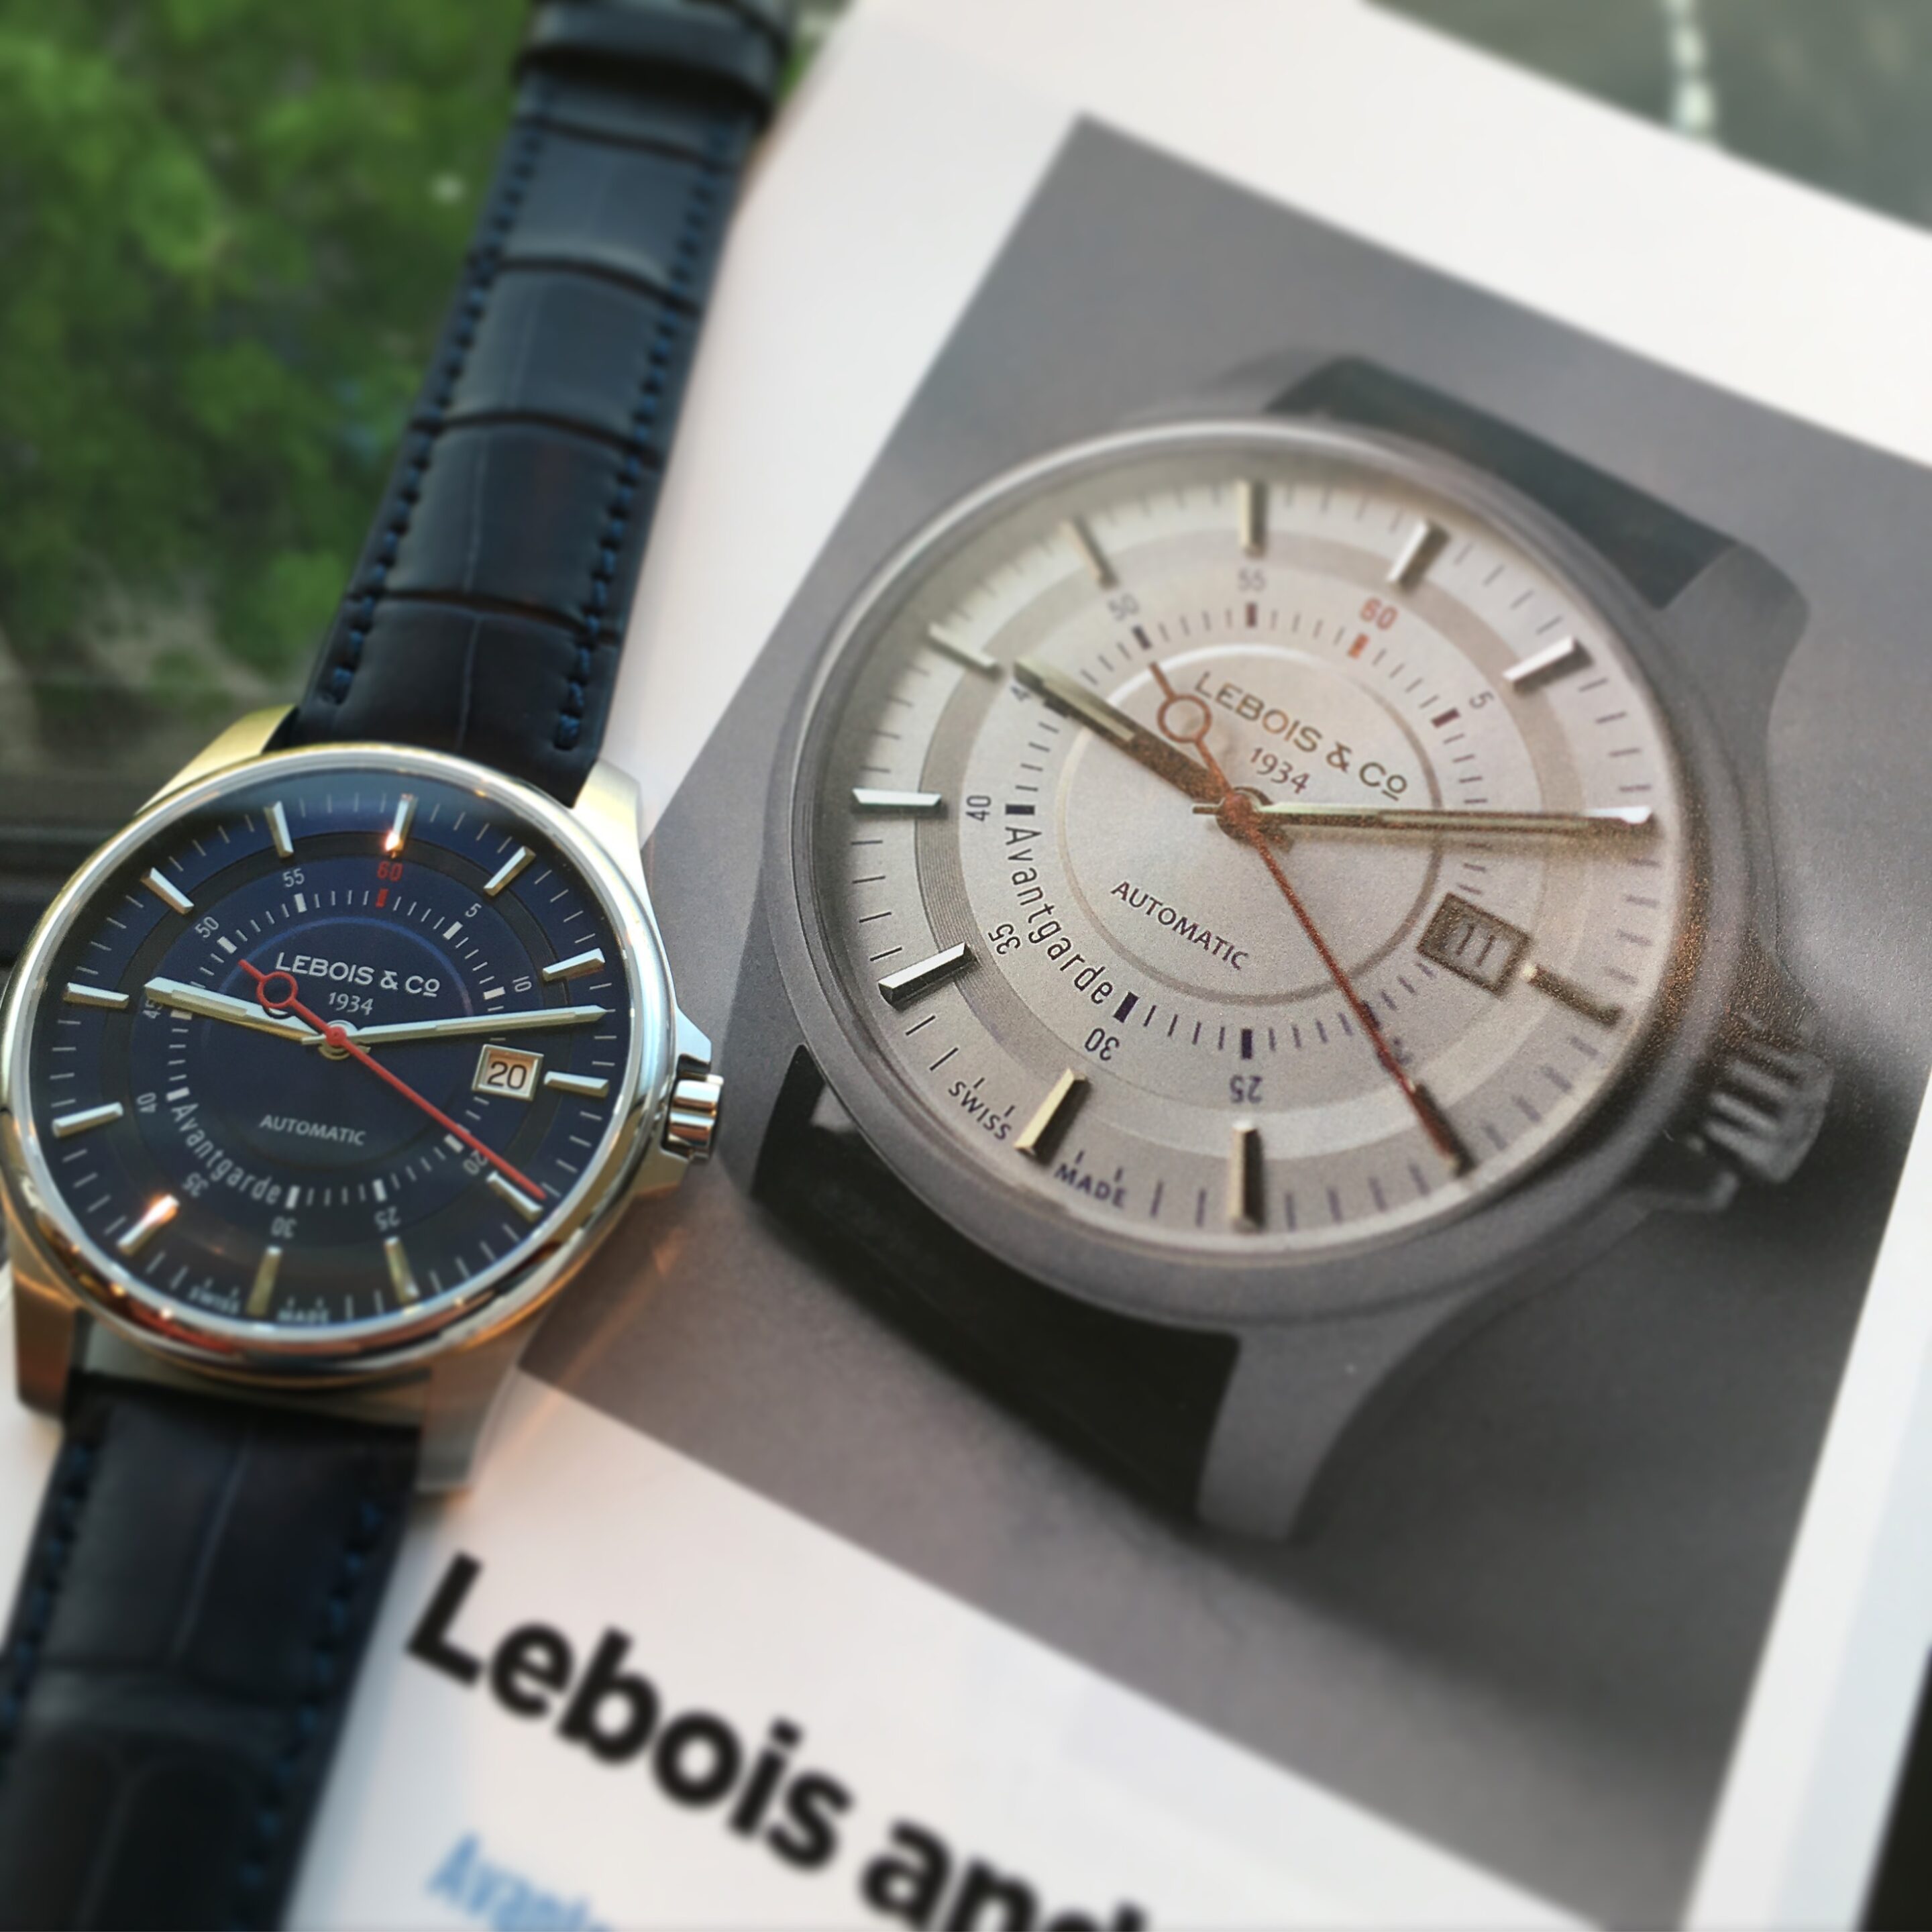 Lebois & Co in Germany’s Uhren Magazin